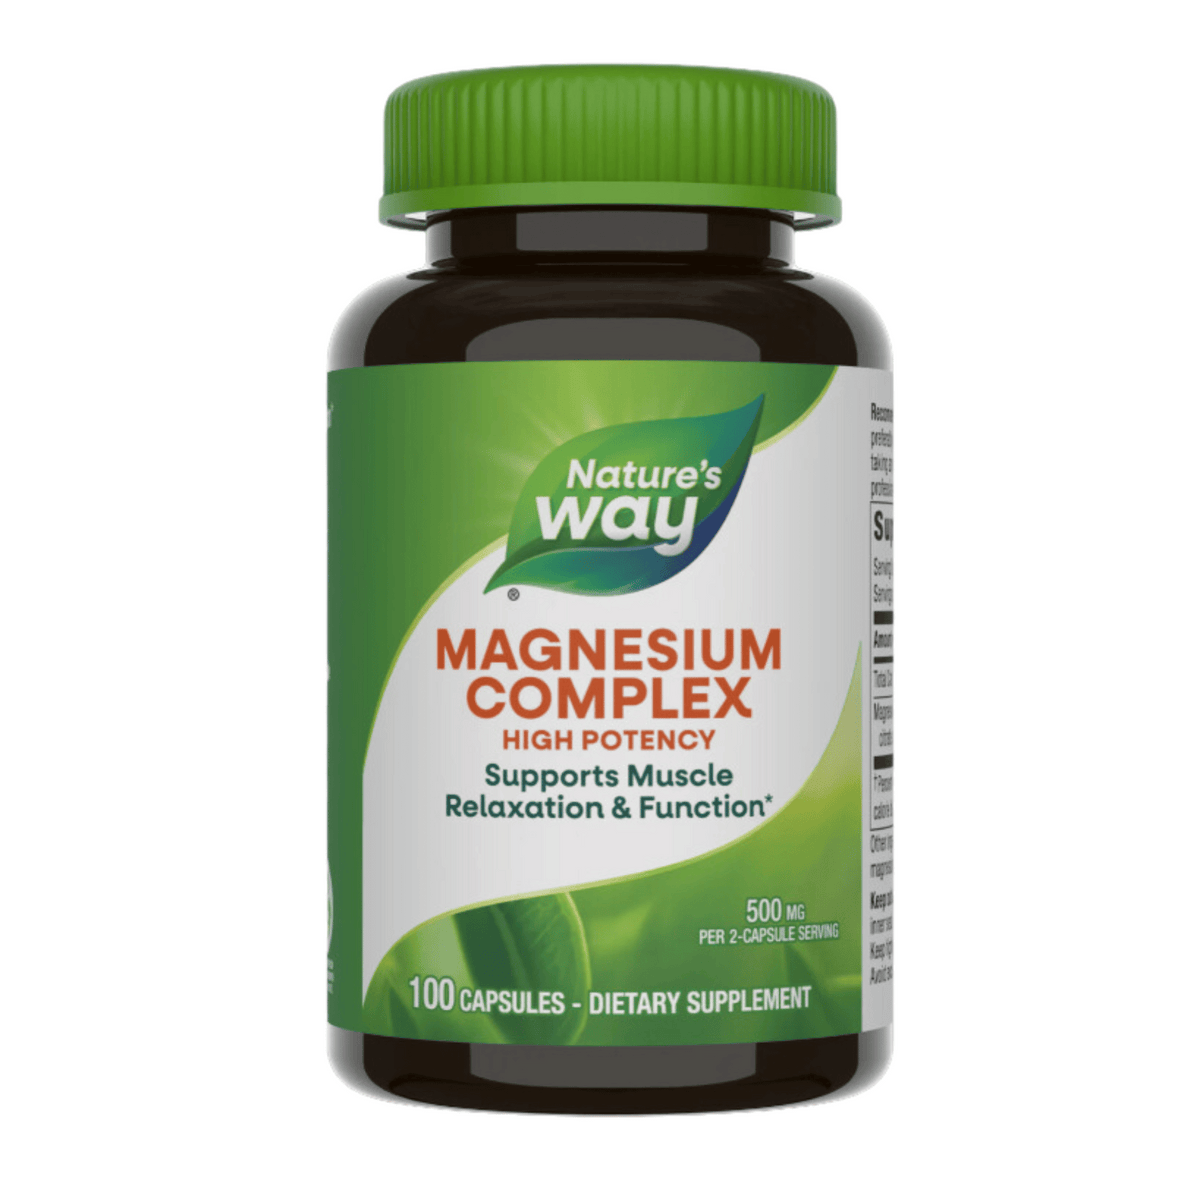 Primary Image of Magnesium Complex